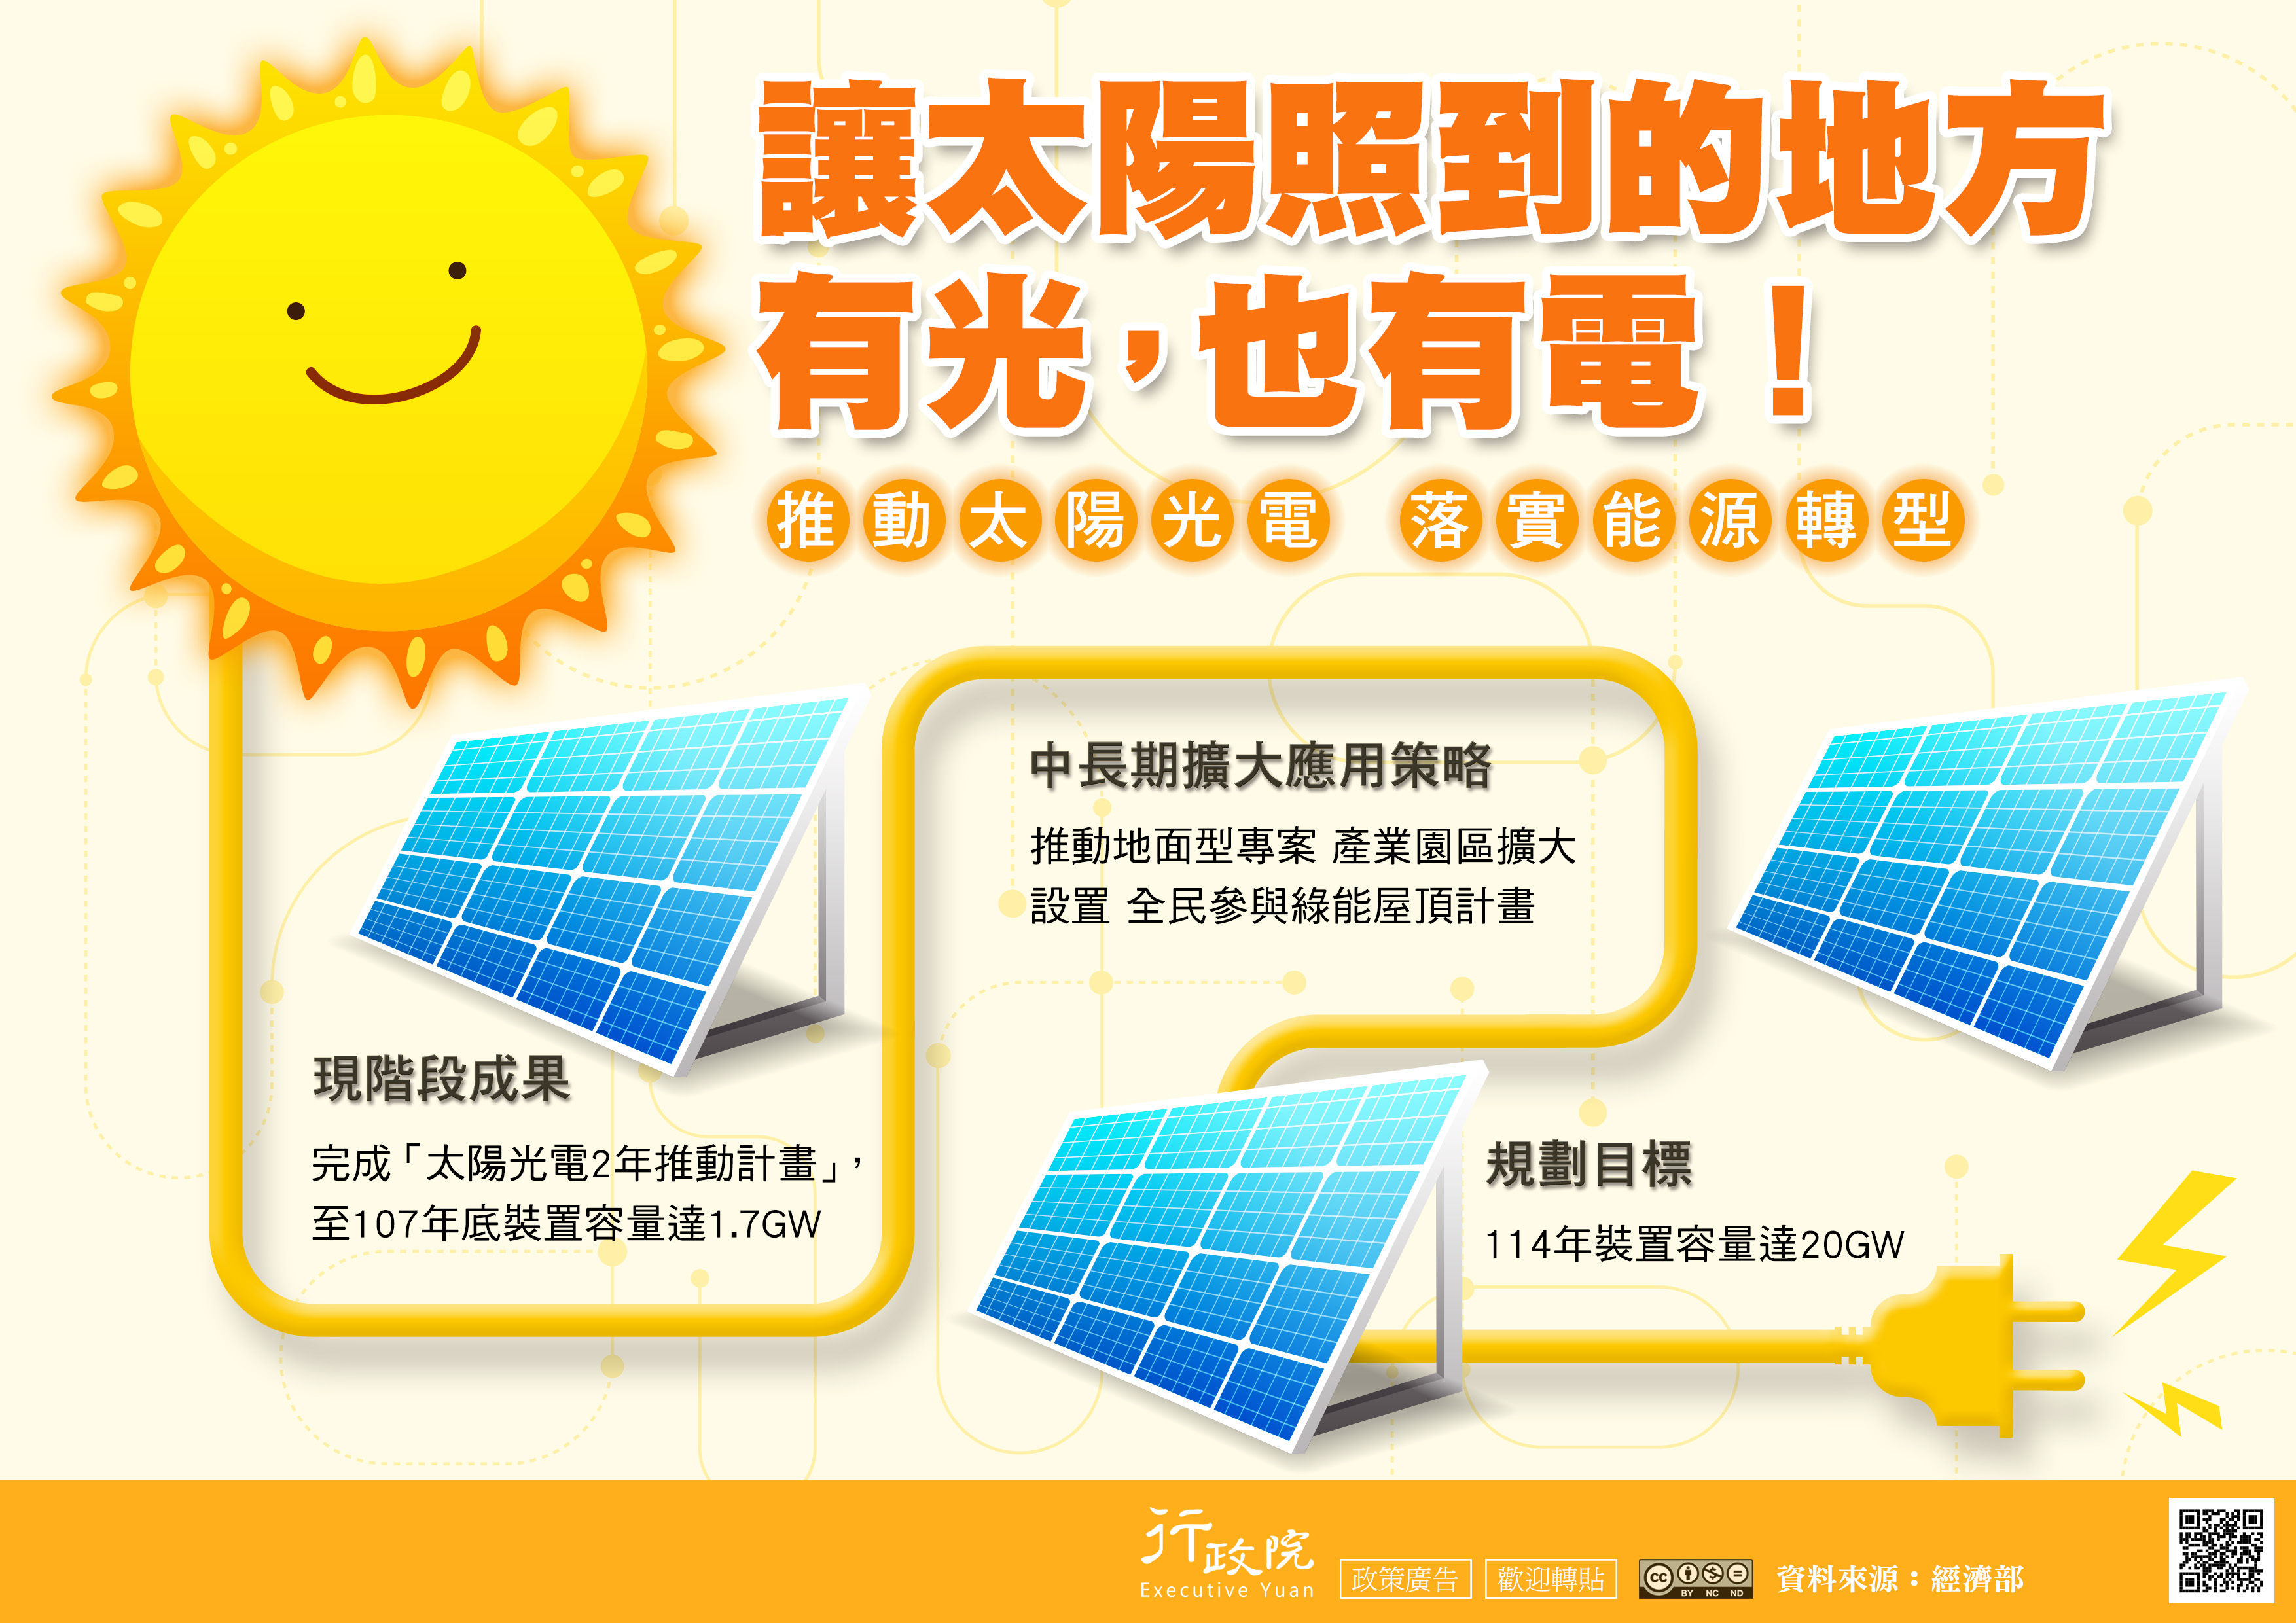 行政院宣導文宣—「推動太陽光電 落實能源轉型」 